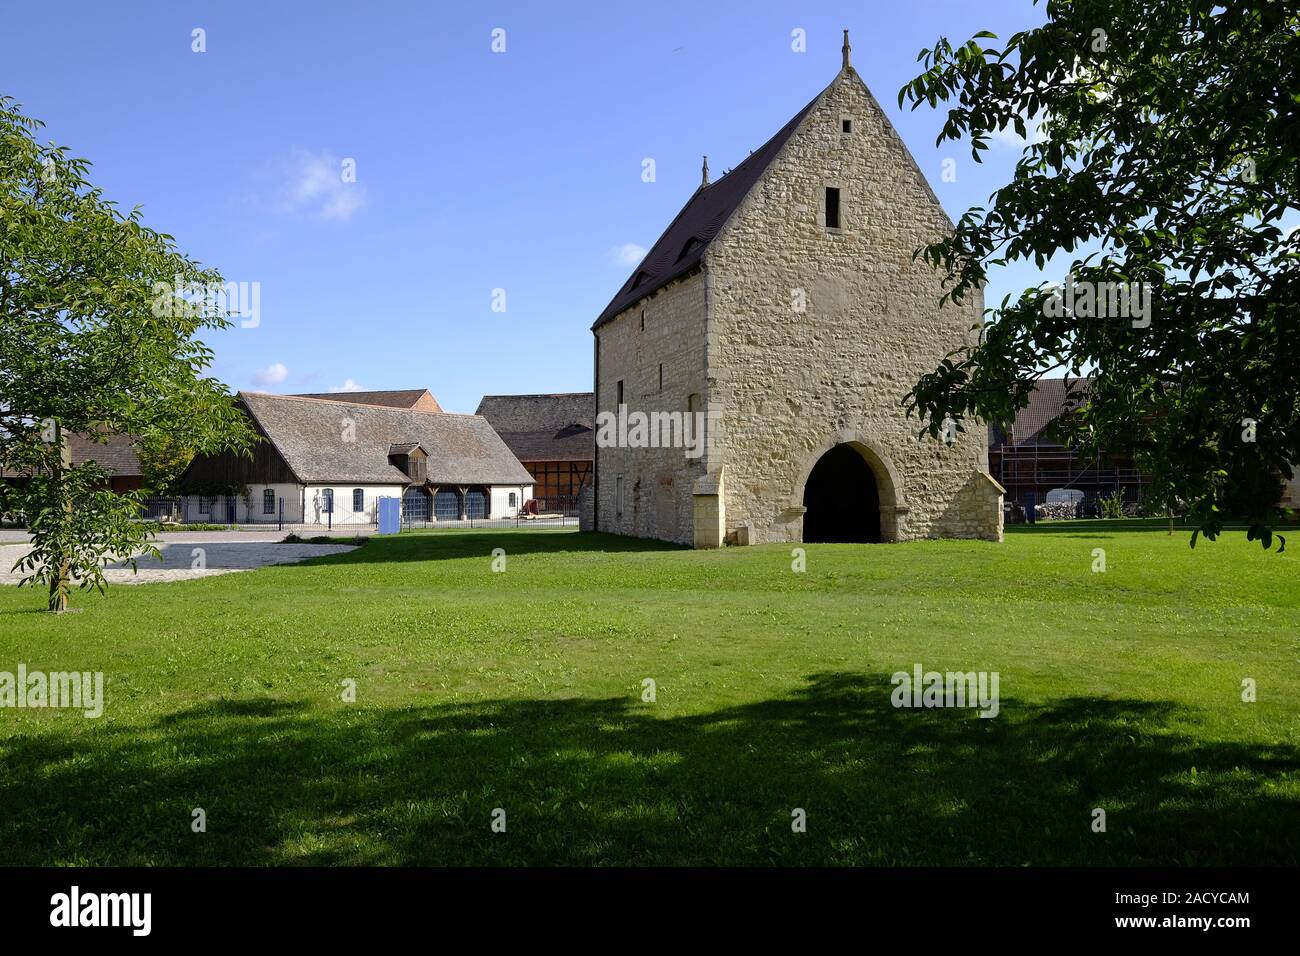 Kloster Schulpforte with monastery garden in Schulpforte near Naumburg on the Romanesque Road, Burgenlandkreis, Saxony-Anhalt, G Stock Photo